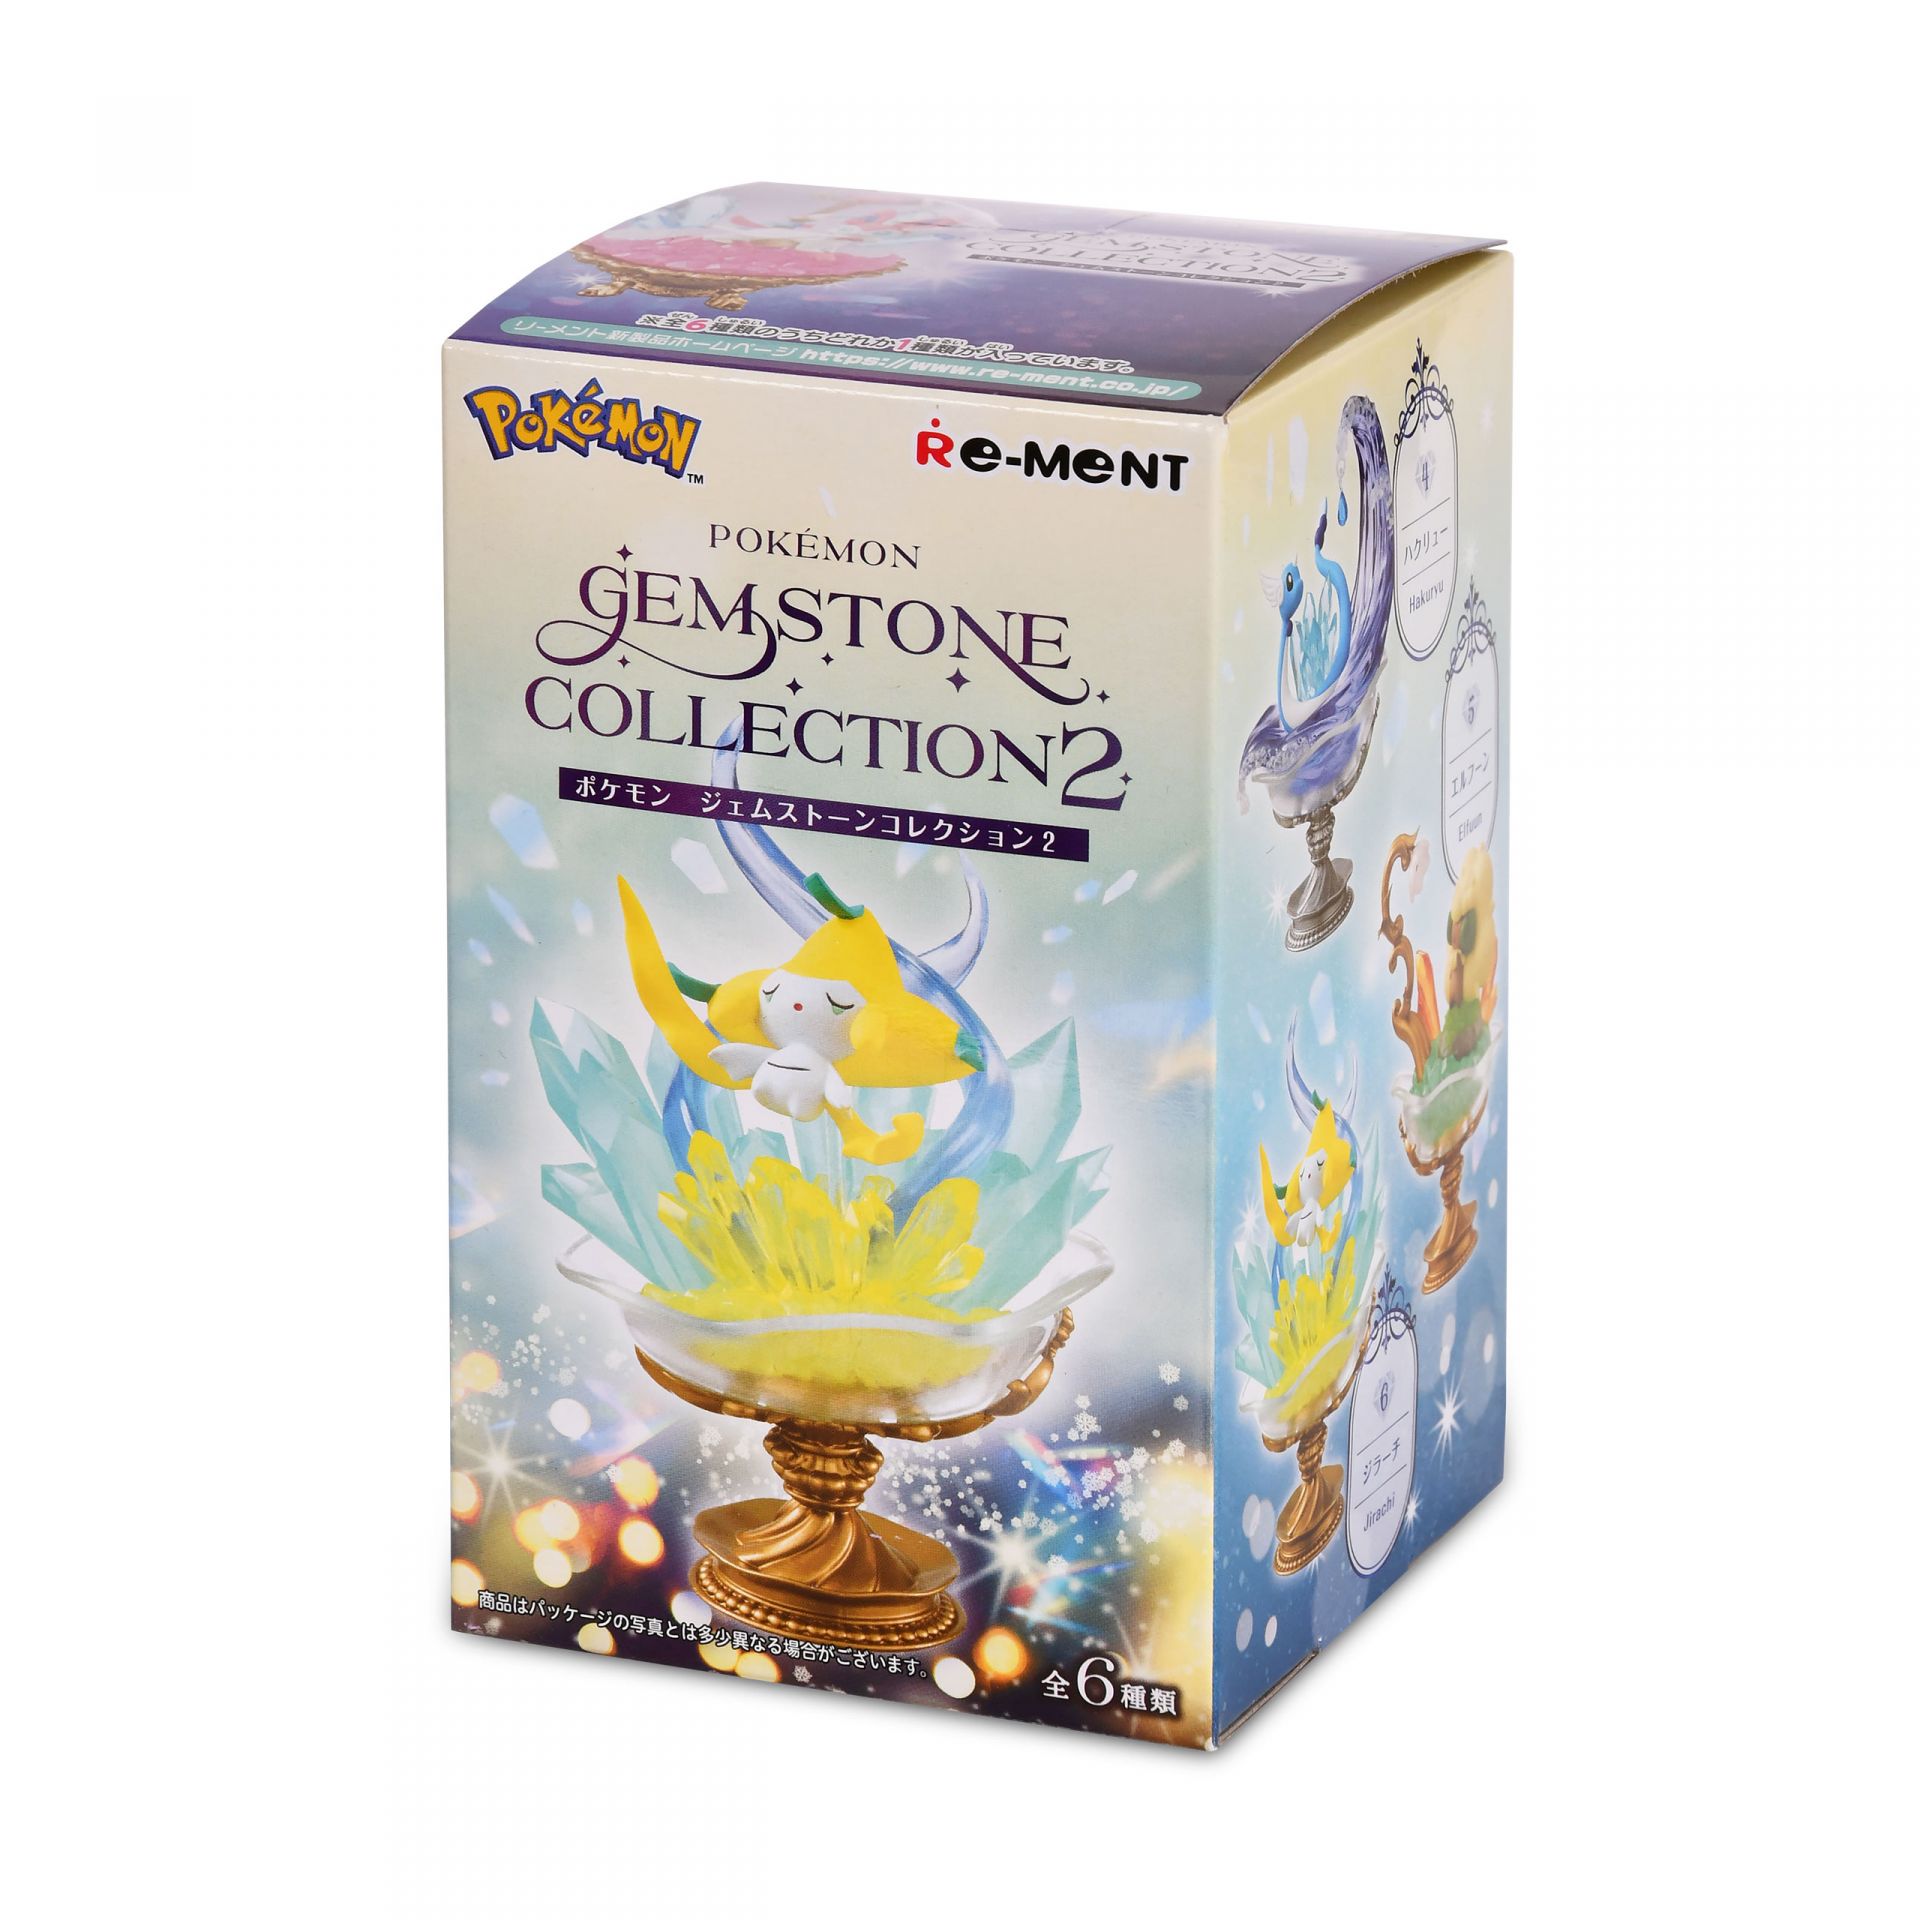 Pokémon Mystery Gemstone Collection 2